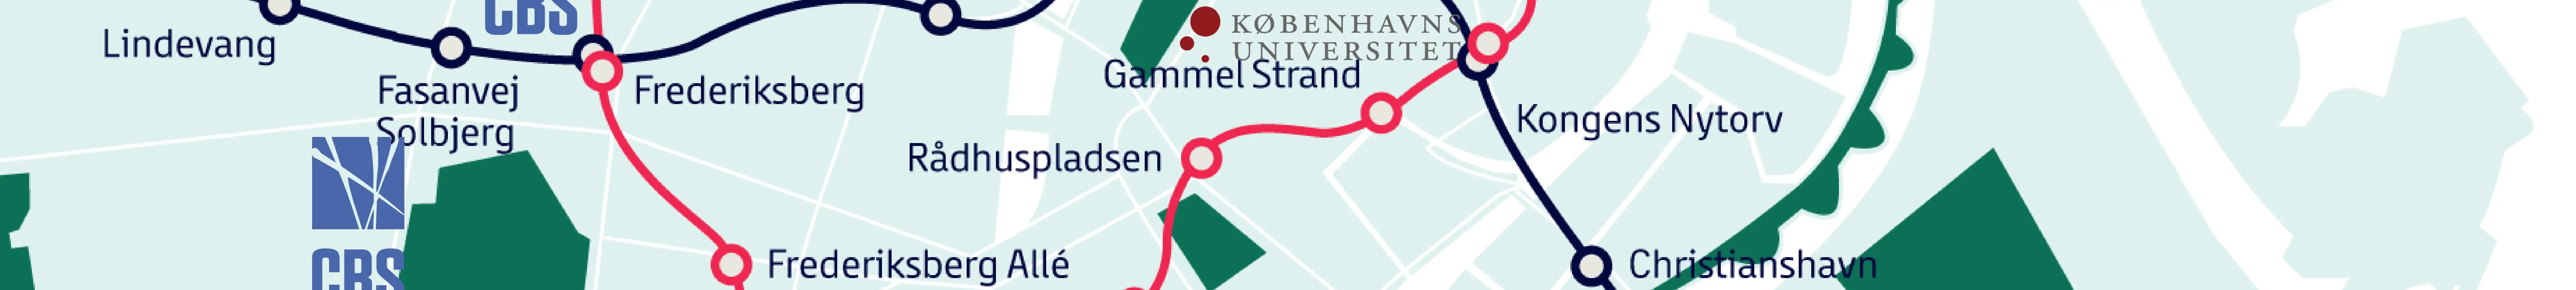 CBS, CPH Business, IT-Universitetet, KEA, Det Kongelige Akademi, Københavns Professionshøjskole, Københavns Universitet logoer på metrolinjekort